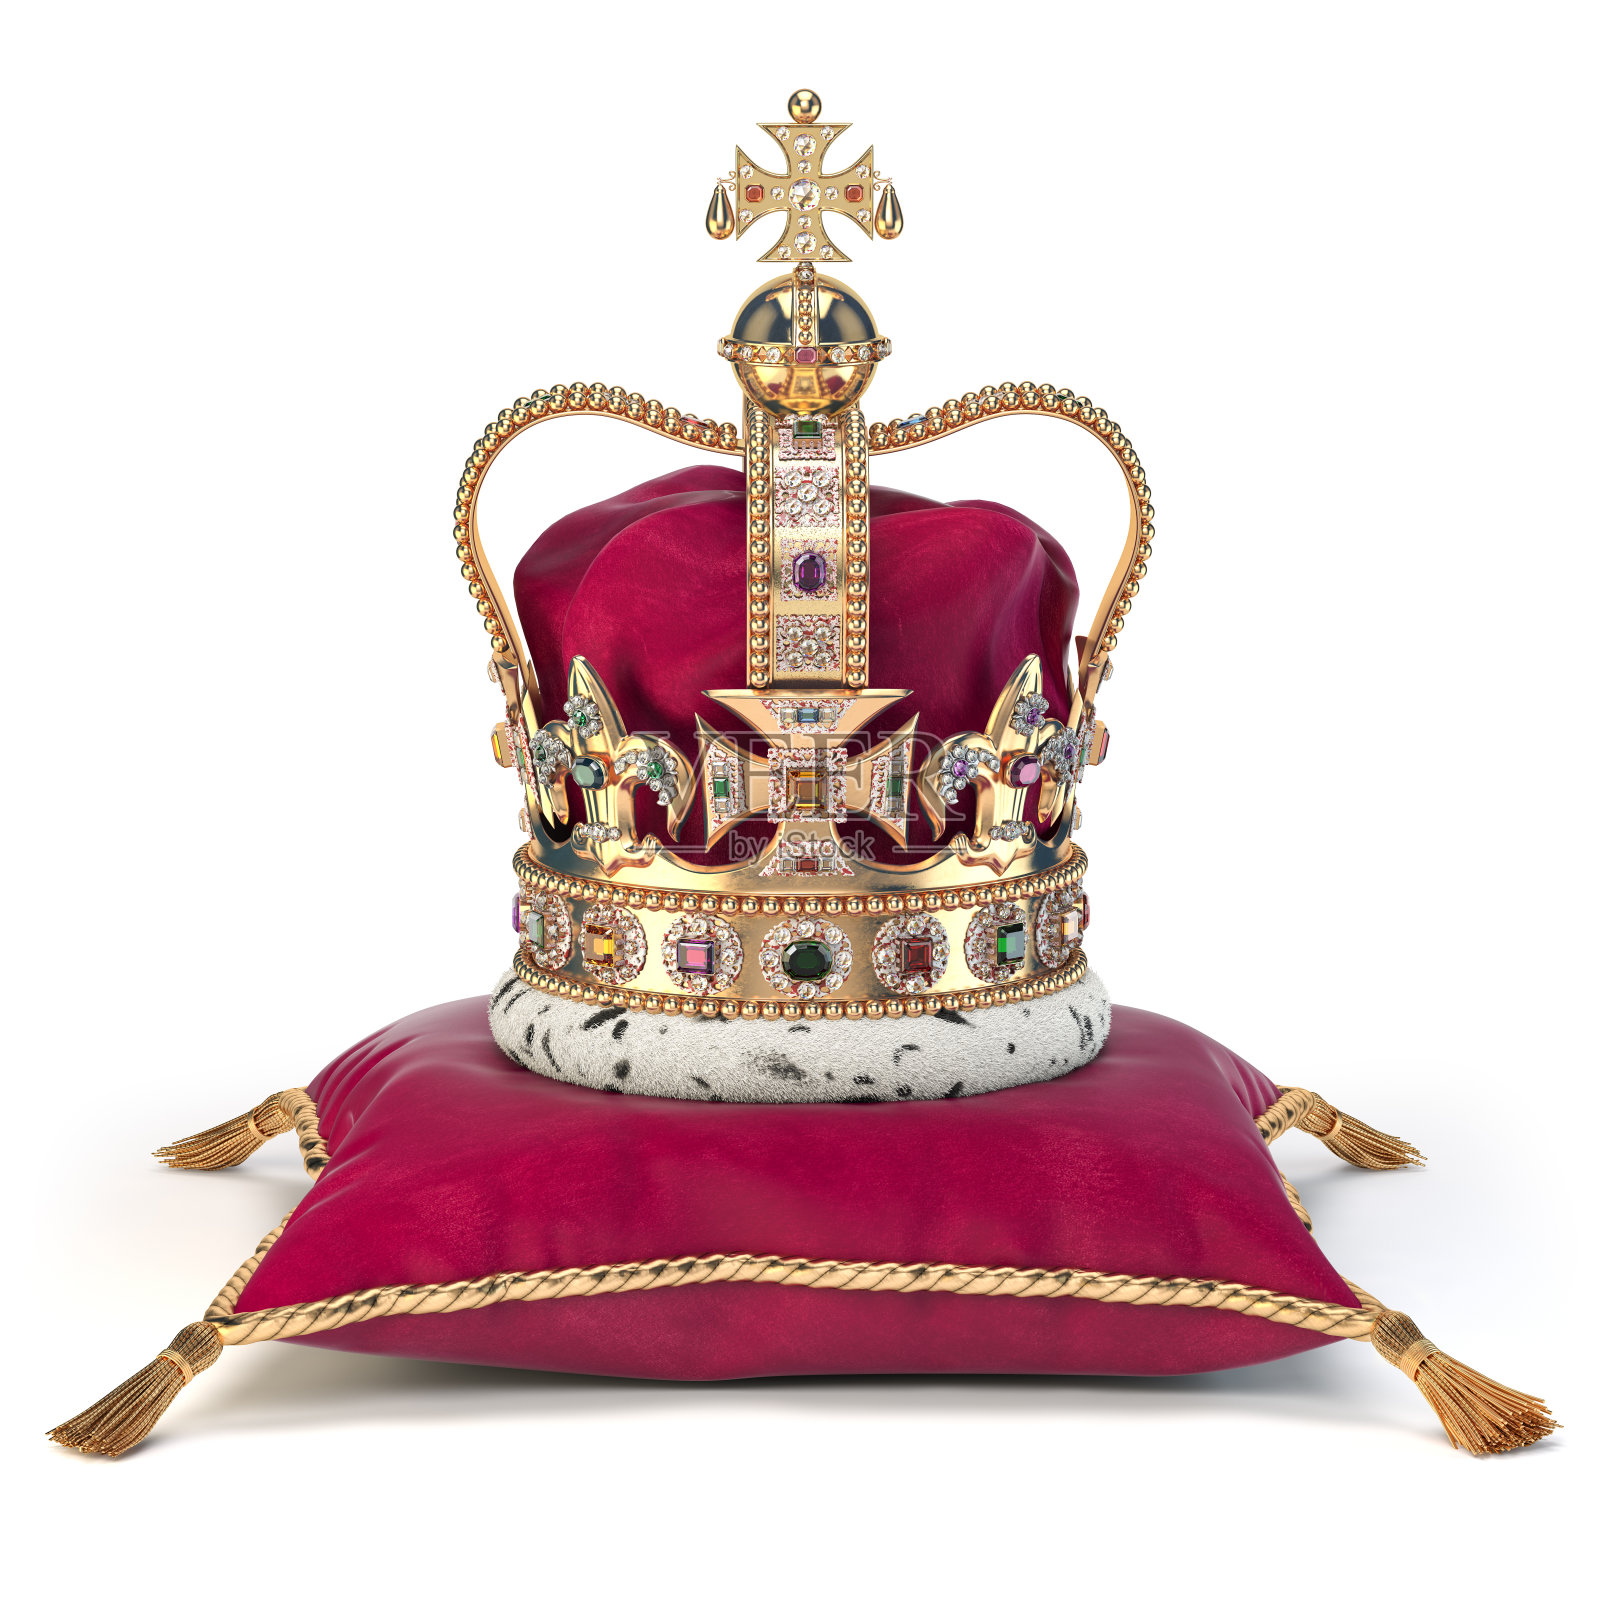 加冕礼上的金色皇冠，红色天鹅绒枕头。王室是英国君主制的象征。照片摄影图片